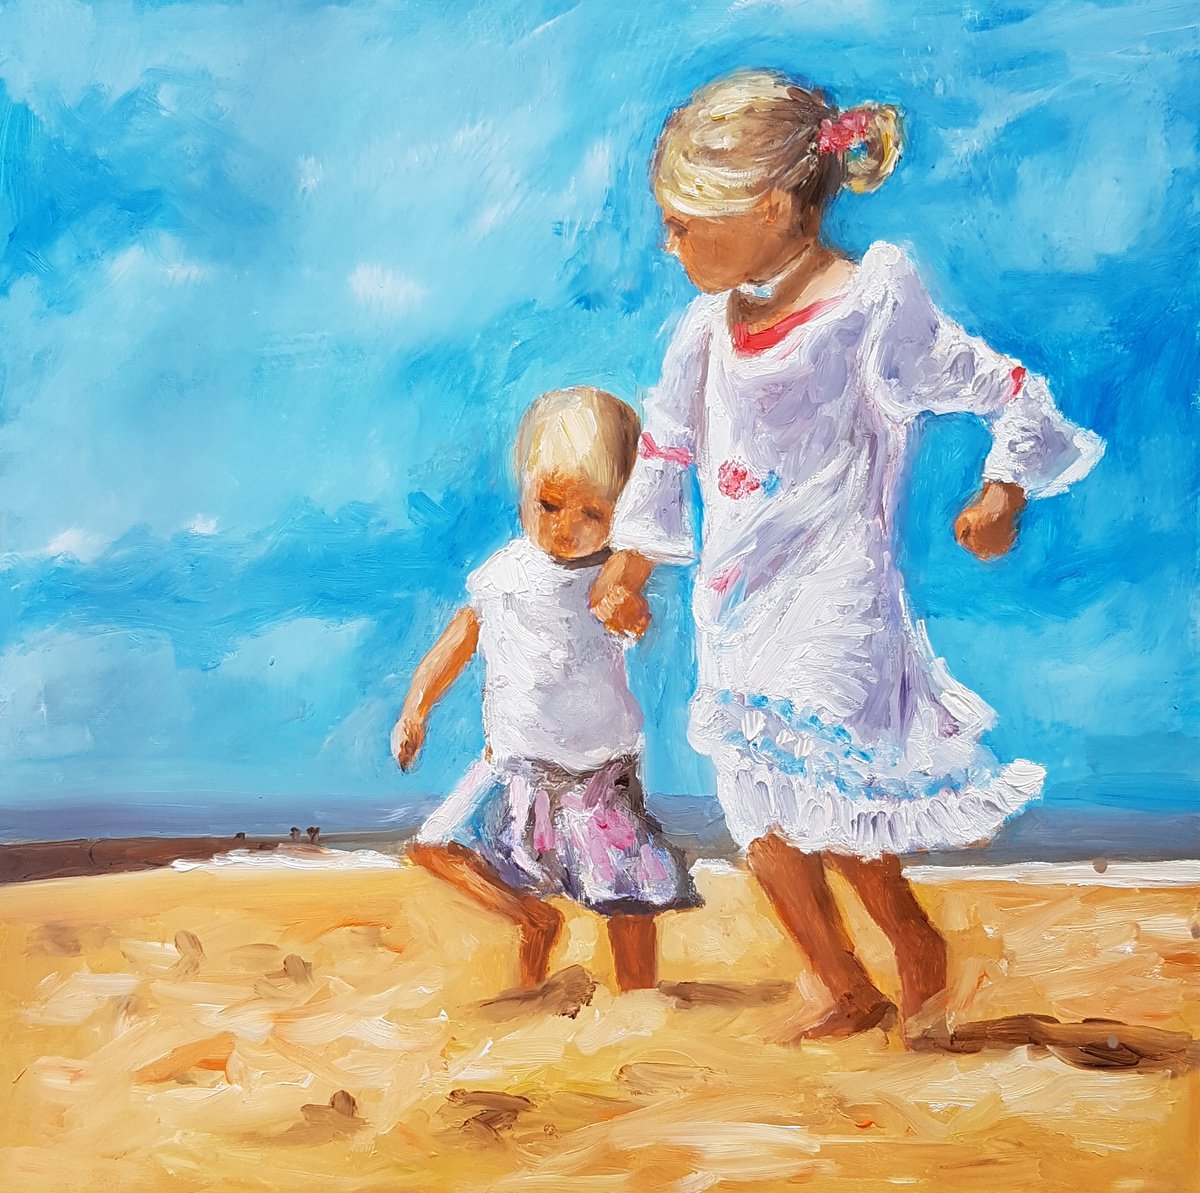 Children at the beach by Els Driesen